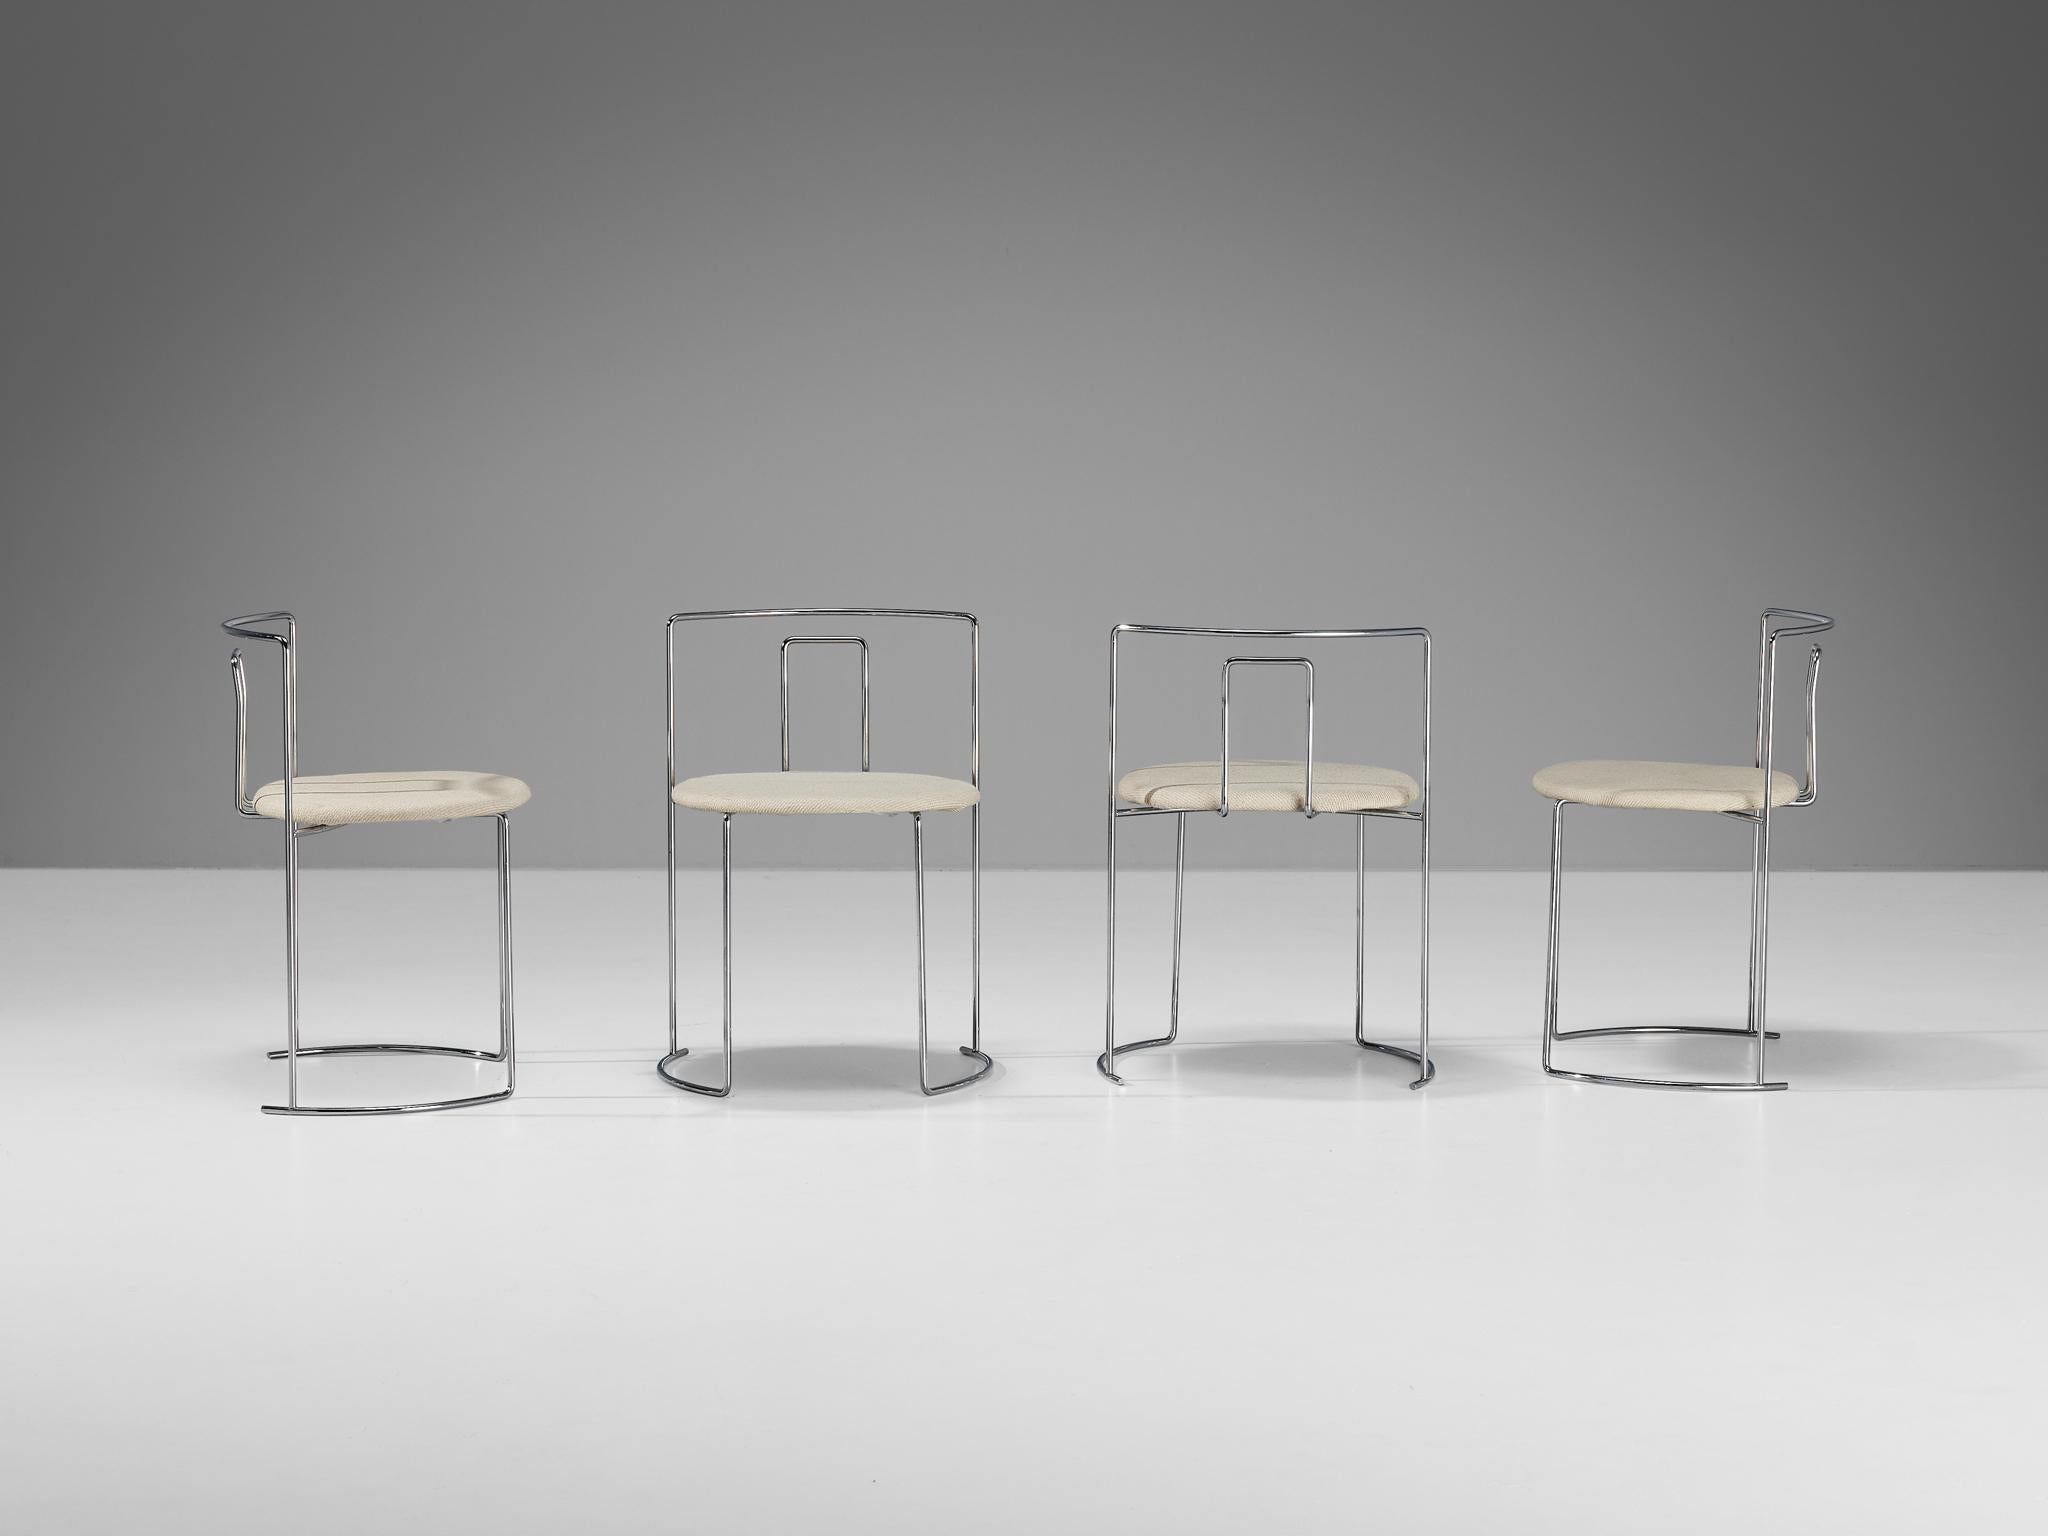 Kazuhide Takahama pour Simon Gavina, ensemble de quatre chaises 'Gaja', métal chromé, tissu, Italie, design 1979

Ensemble de quatre belles et délicates chaises de salle à manger conçues par Kazuhide Takahama en 1979. Les armatures de ces chaises